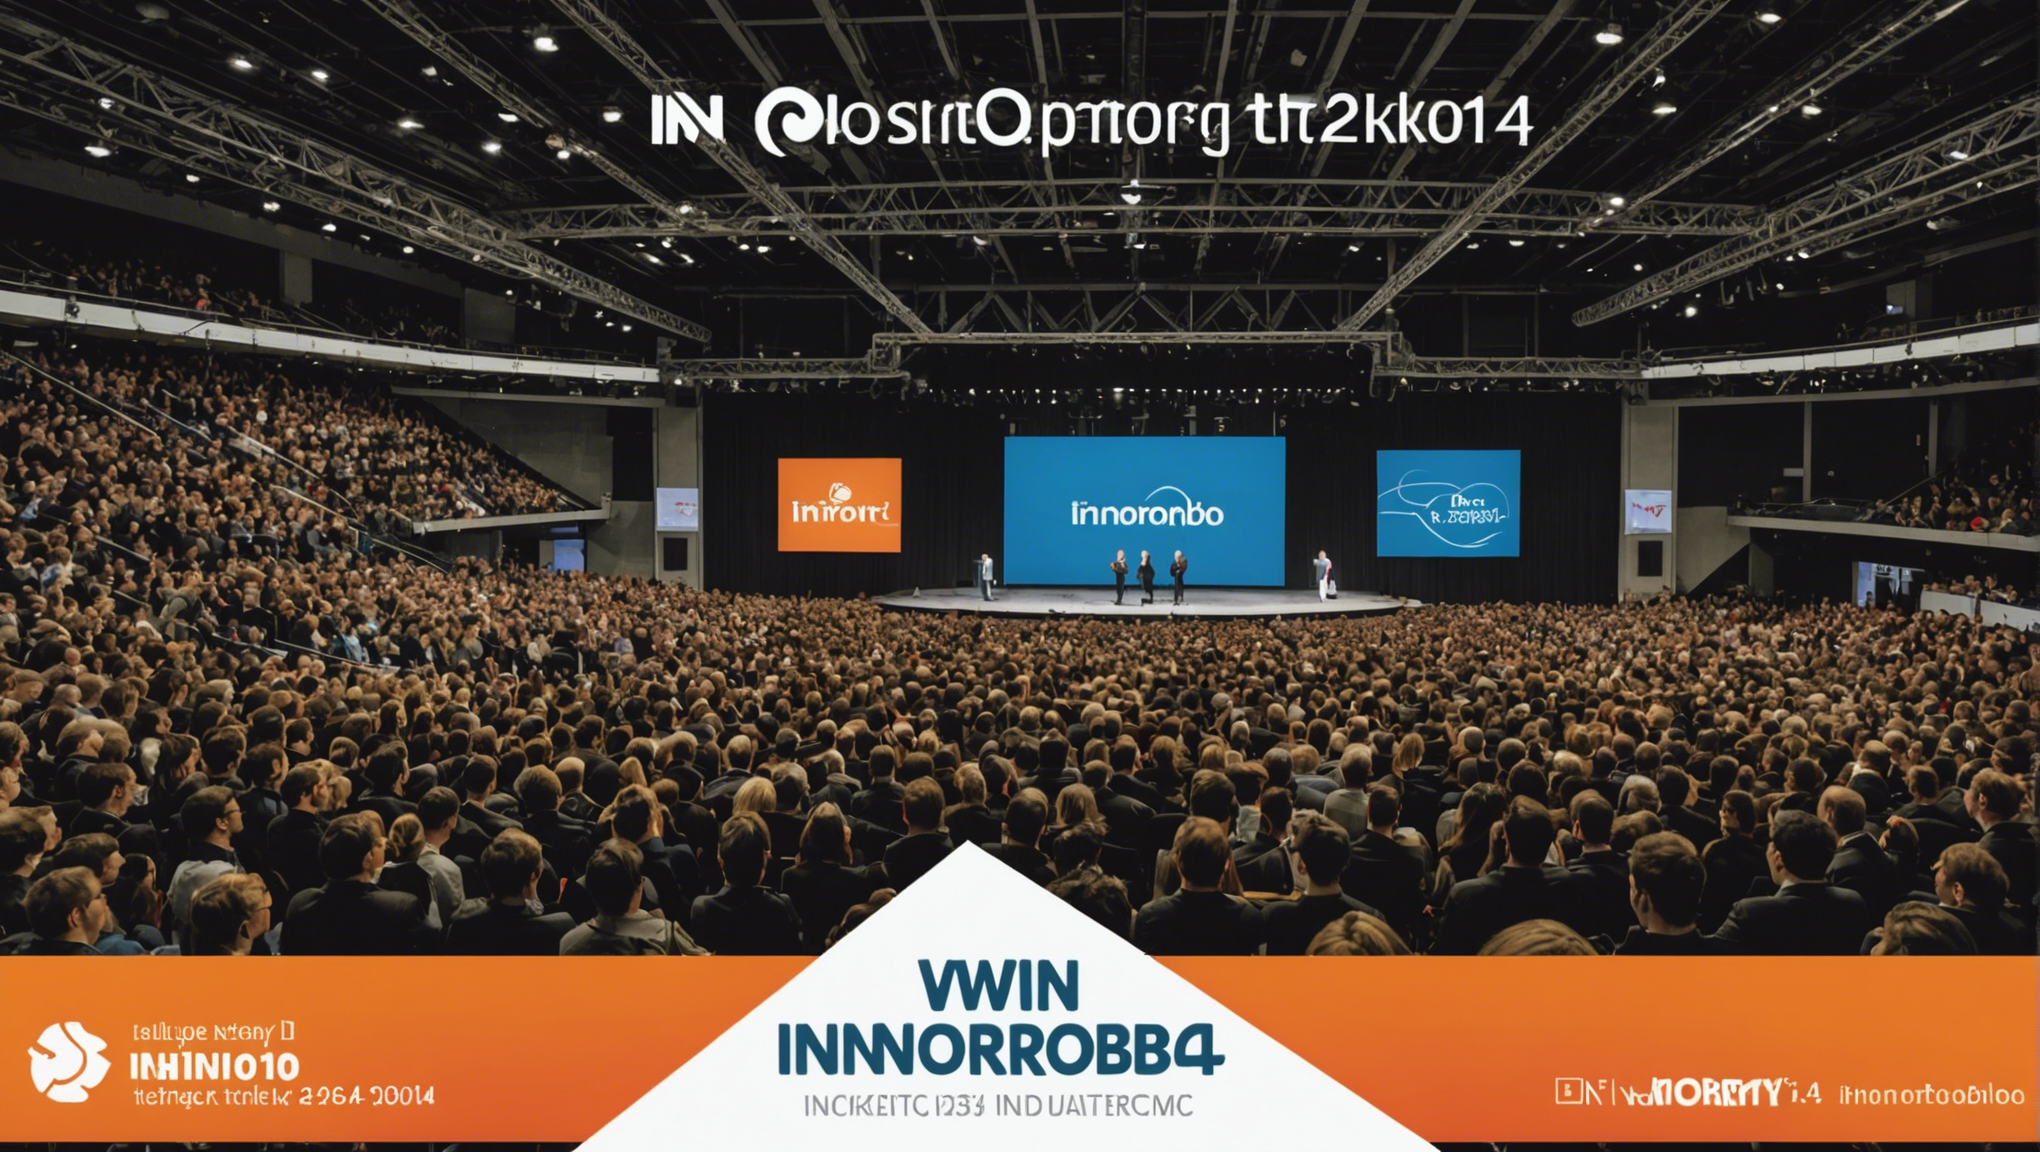 participez à notre jeu concours et tentez de gagner un billet pour assister à innorobo 2014, le plus grand salon européen dédié à la robotique et à l'innovation technologique.